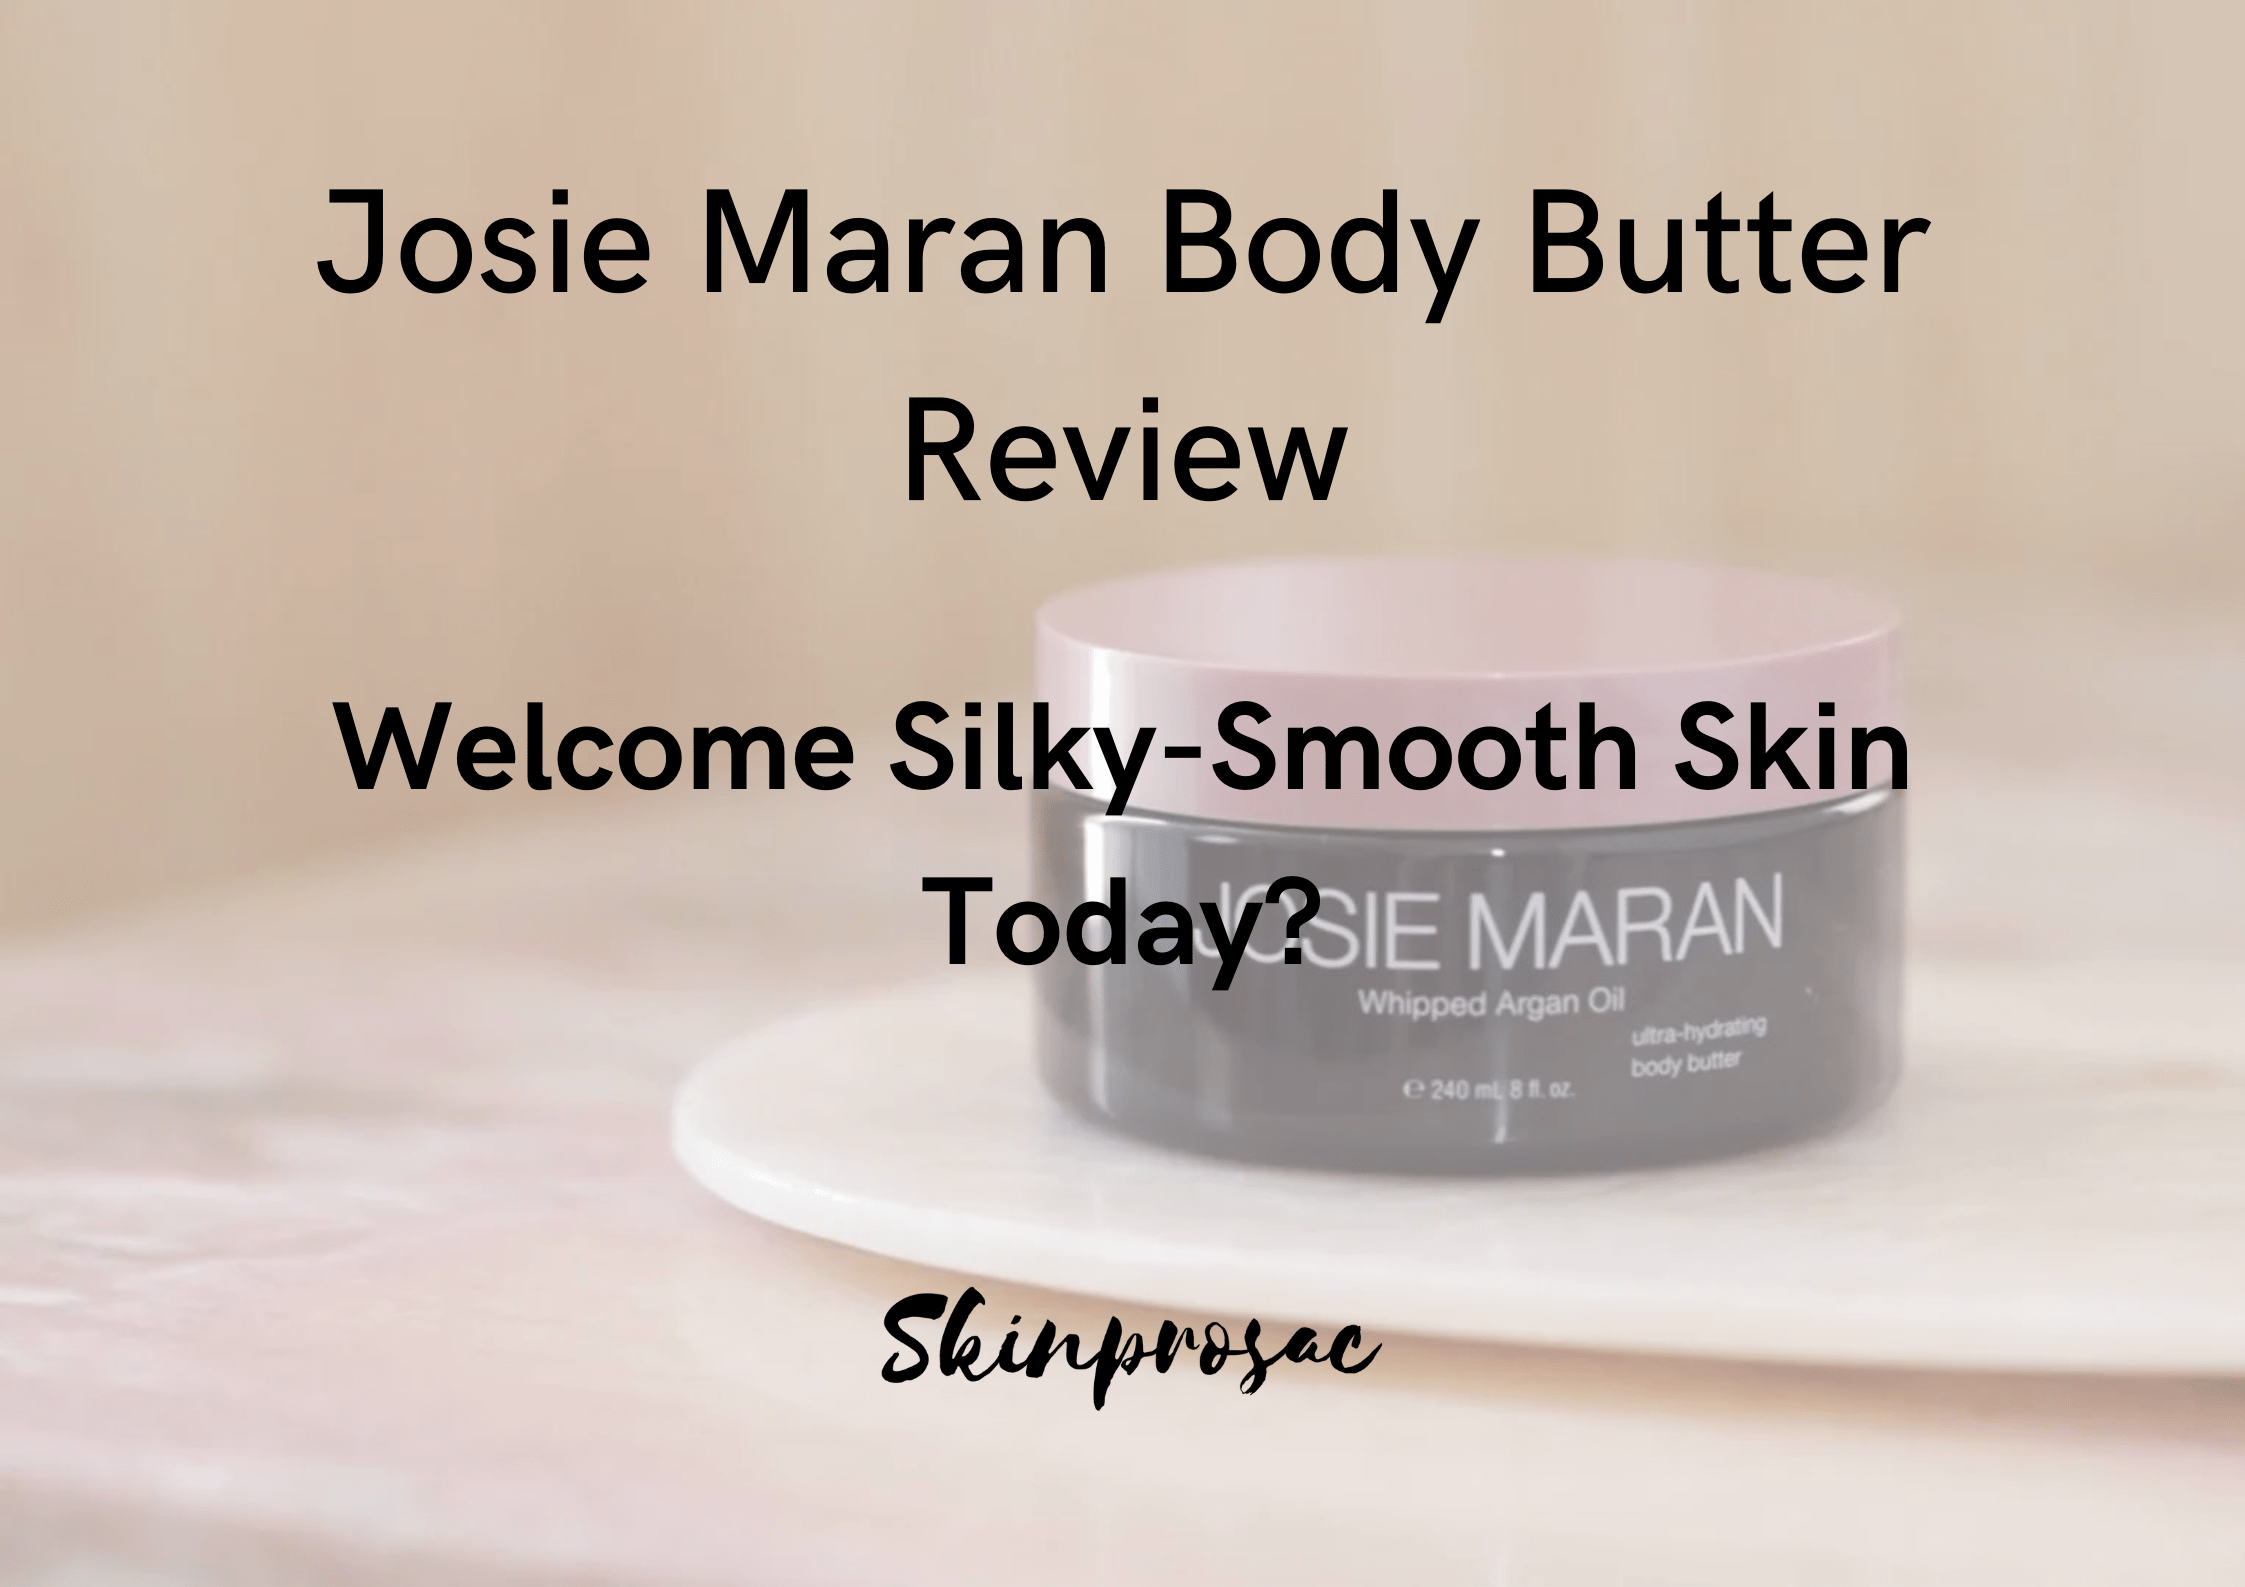 Josie Maran Body Butter reviews